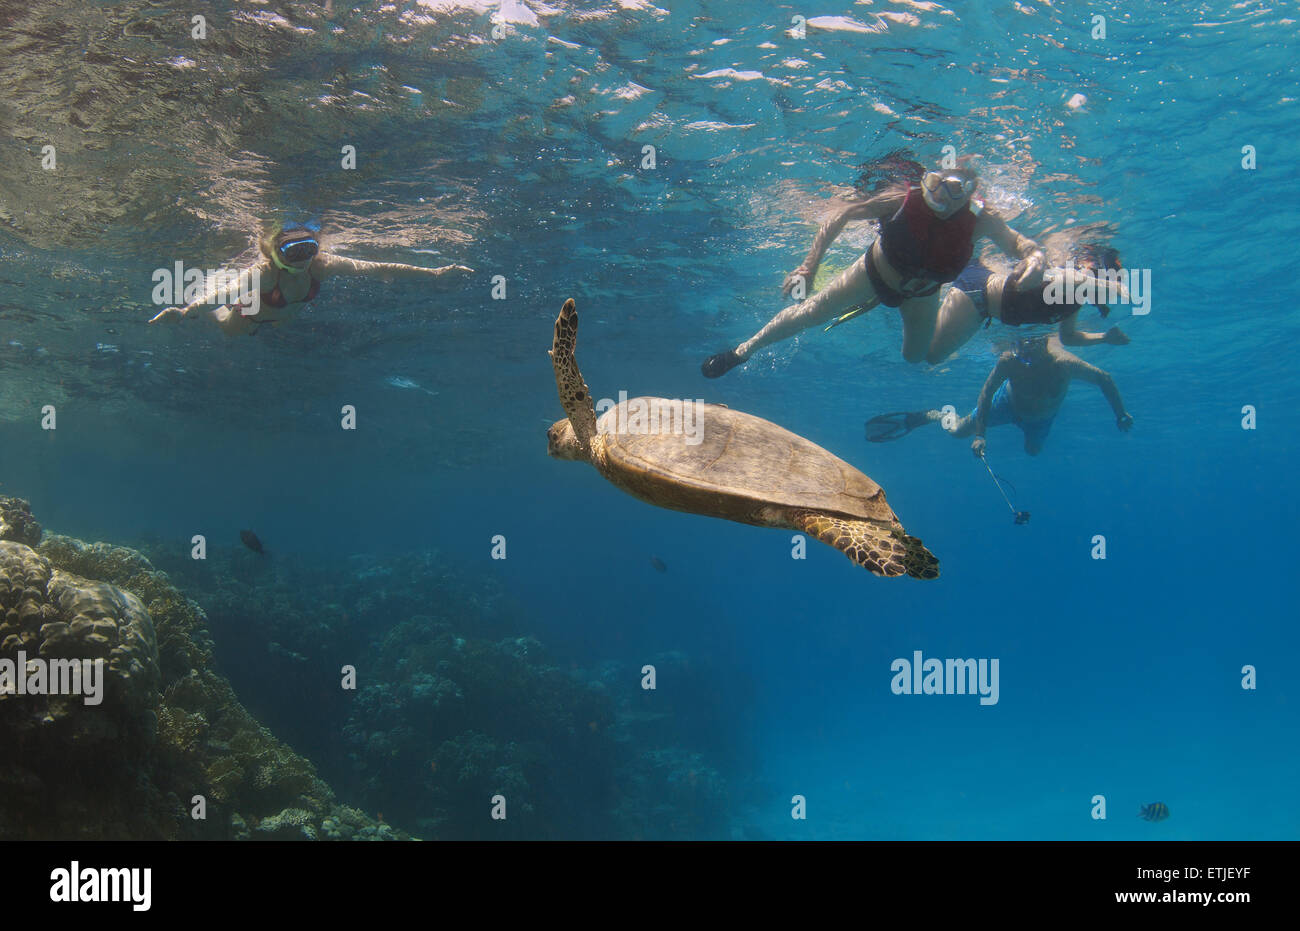 Los pueblos miran tortuga carey (Eretmochelys imbricata) nadando cerca de arrecife, Mar Rojo, Abu Dabab, Marsa Alam, Egipto Foto de stock